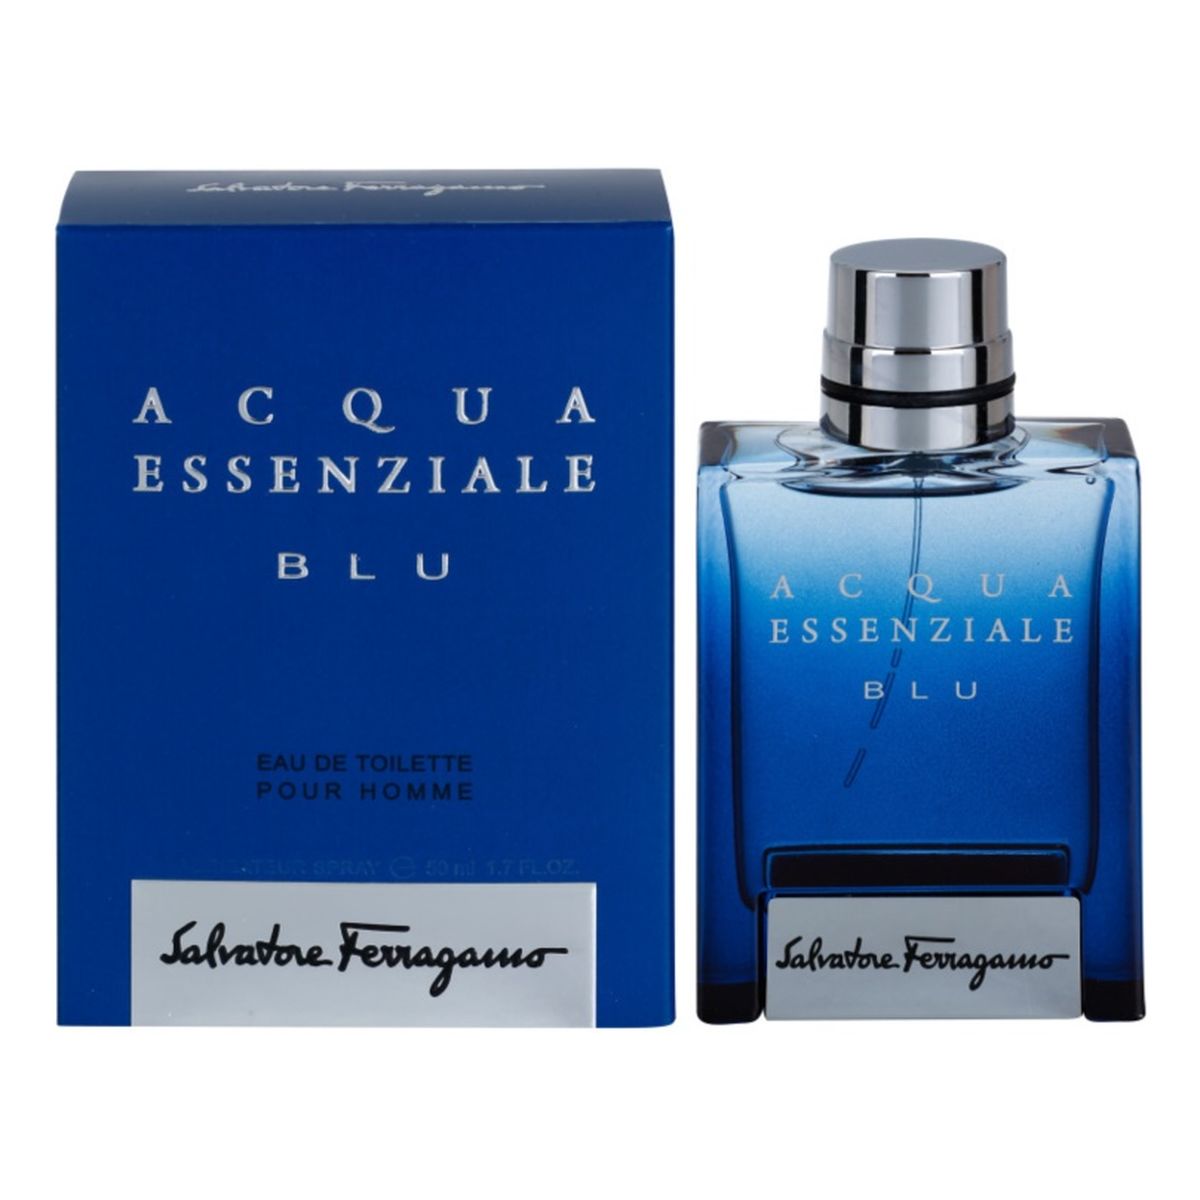 Salvatore Ferragamo Acqua Essenziale Blu woda toaletowa 50ml